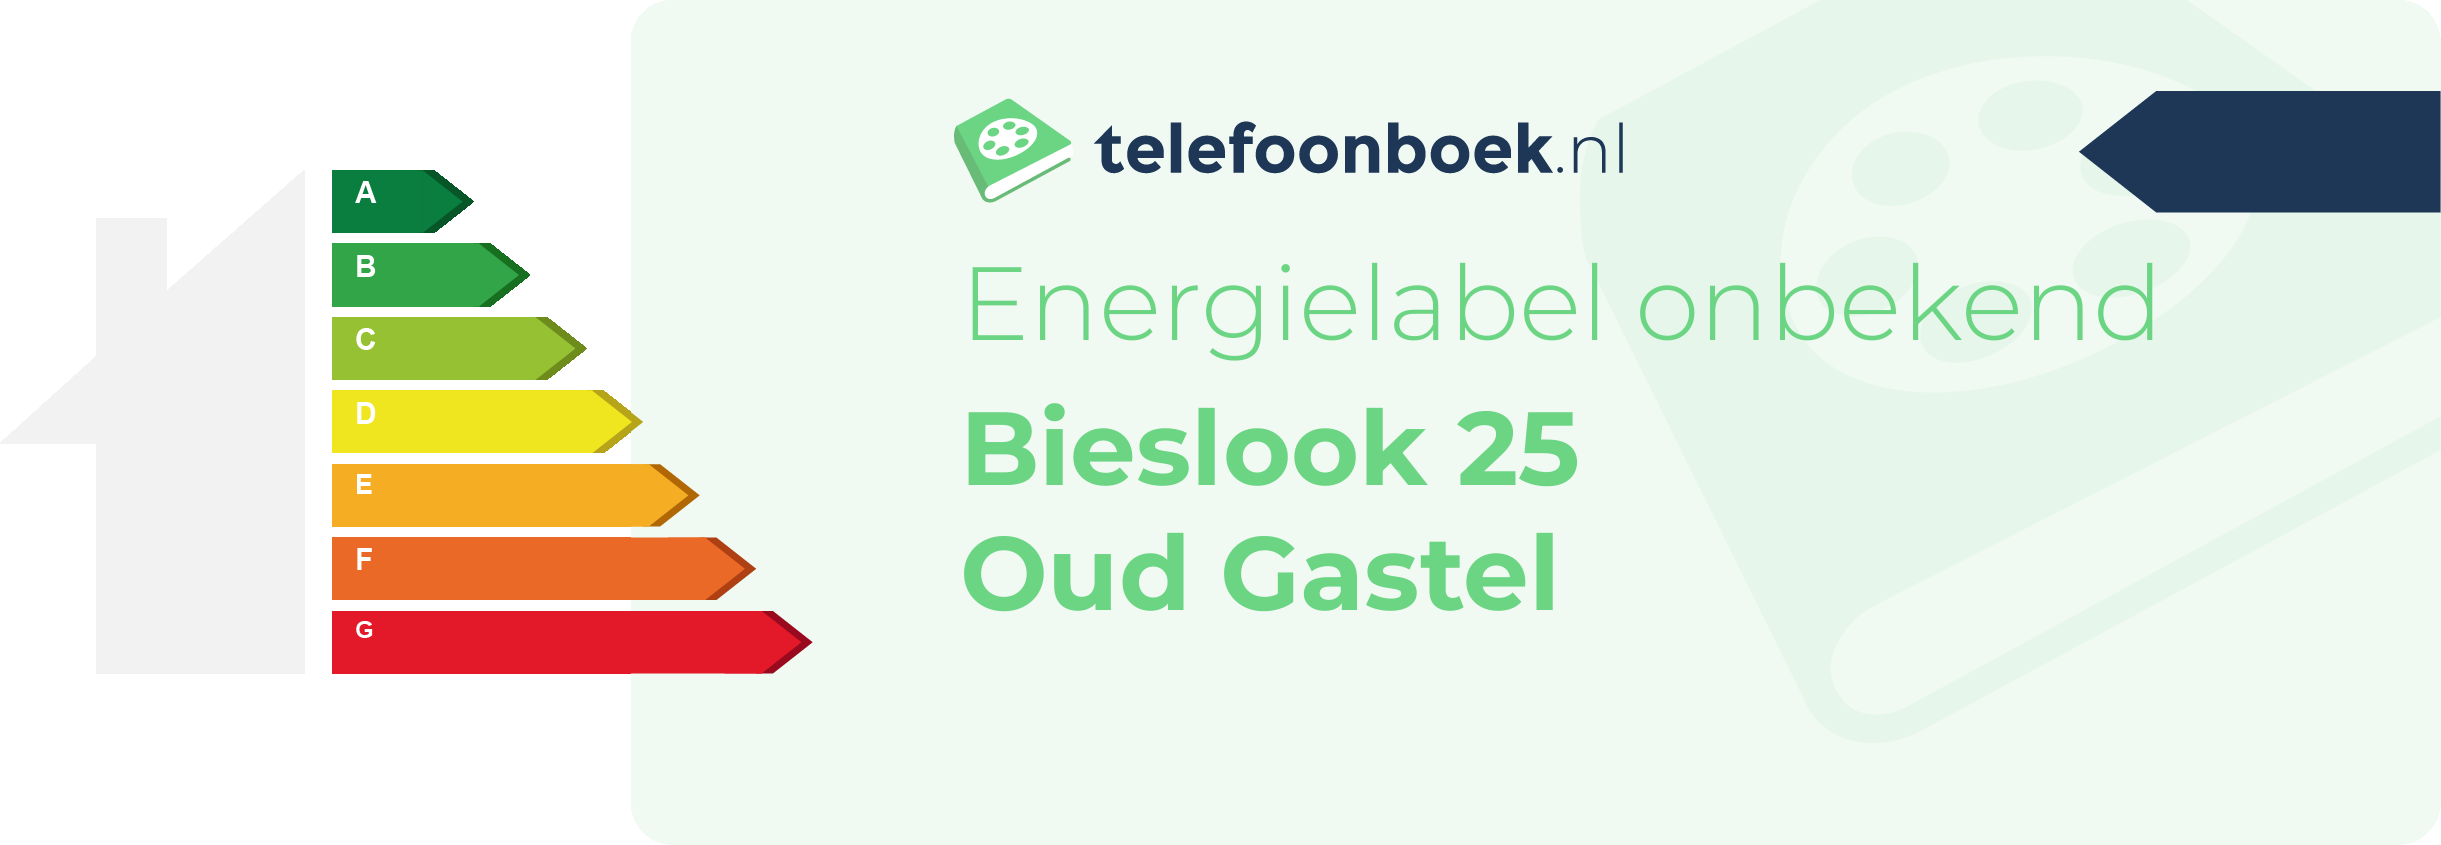 Energielabel Bieslook 25 Oud Gastel